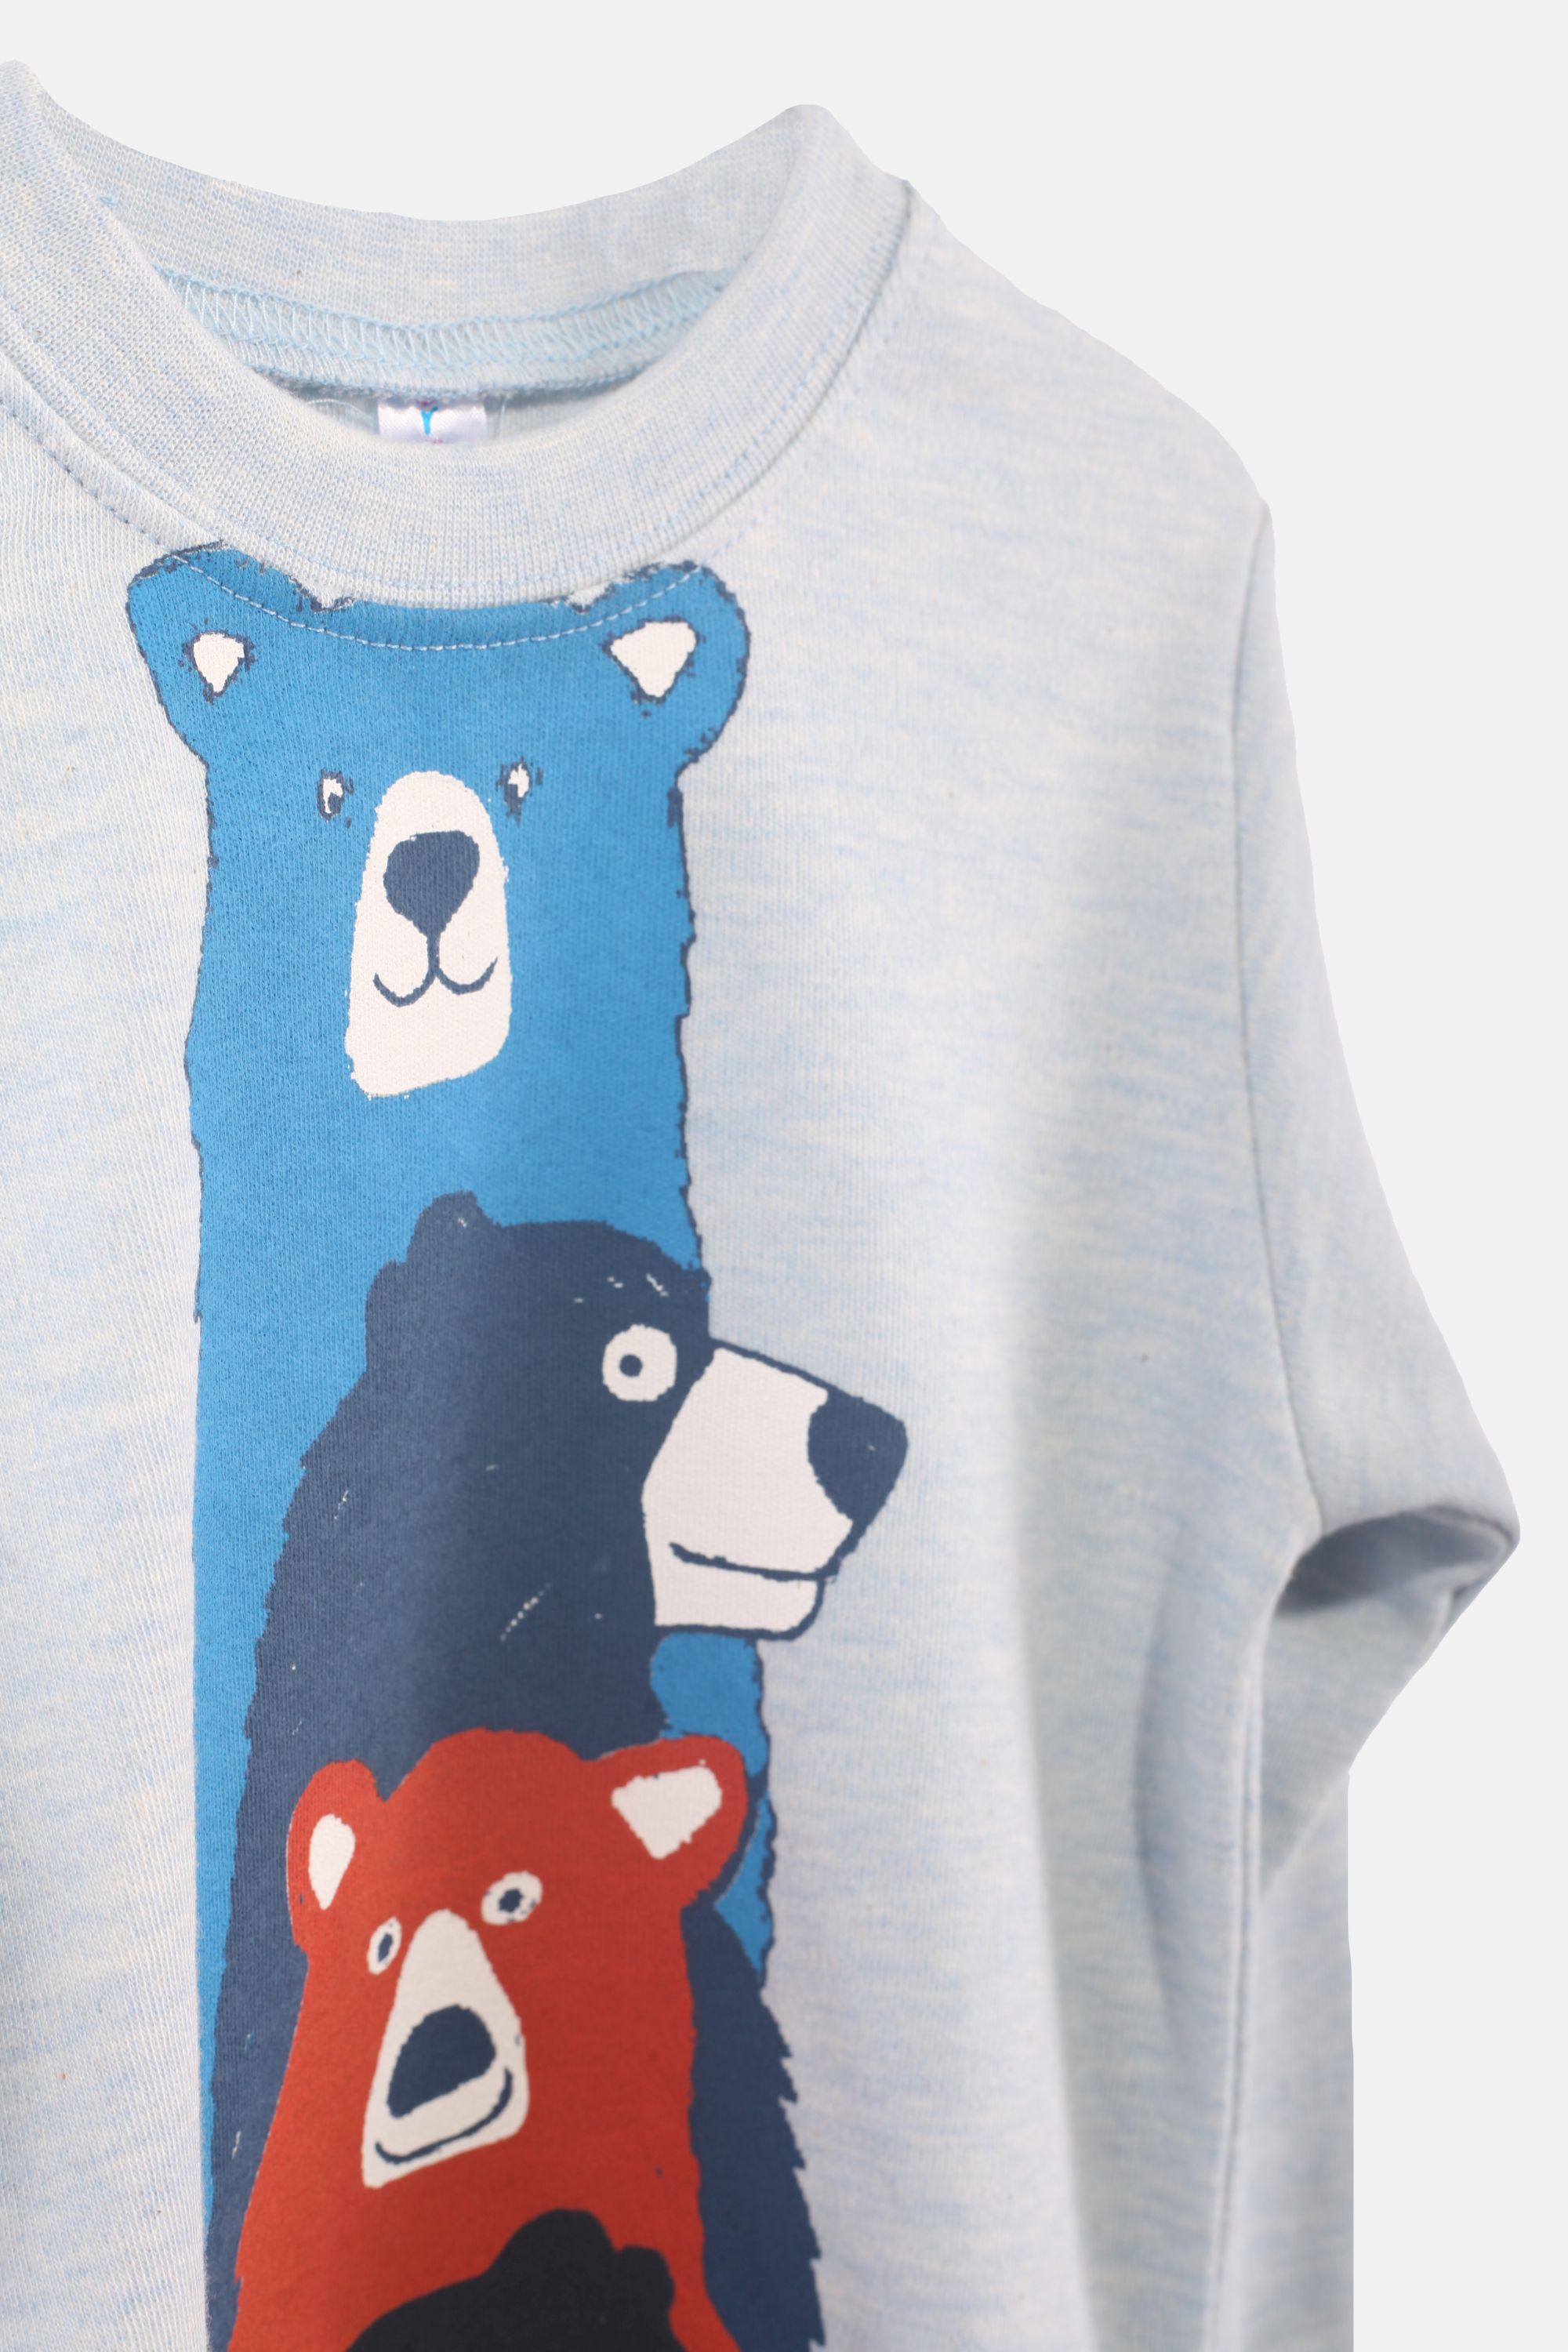 Chlapecké bavlněné pyžamo "4 BEARS SET"/Modrá, béžová Barva: Modrá, Velikost: vel. 4 (100/108 cm)